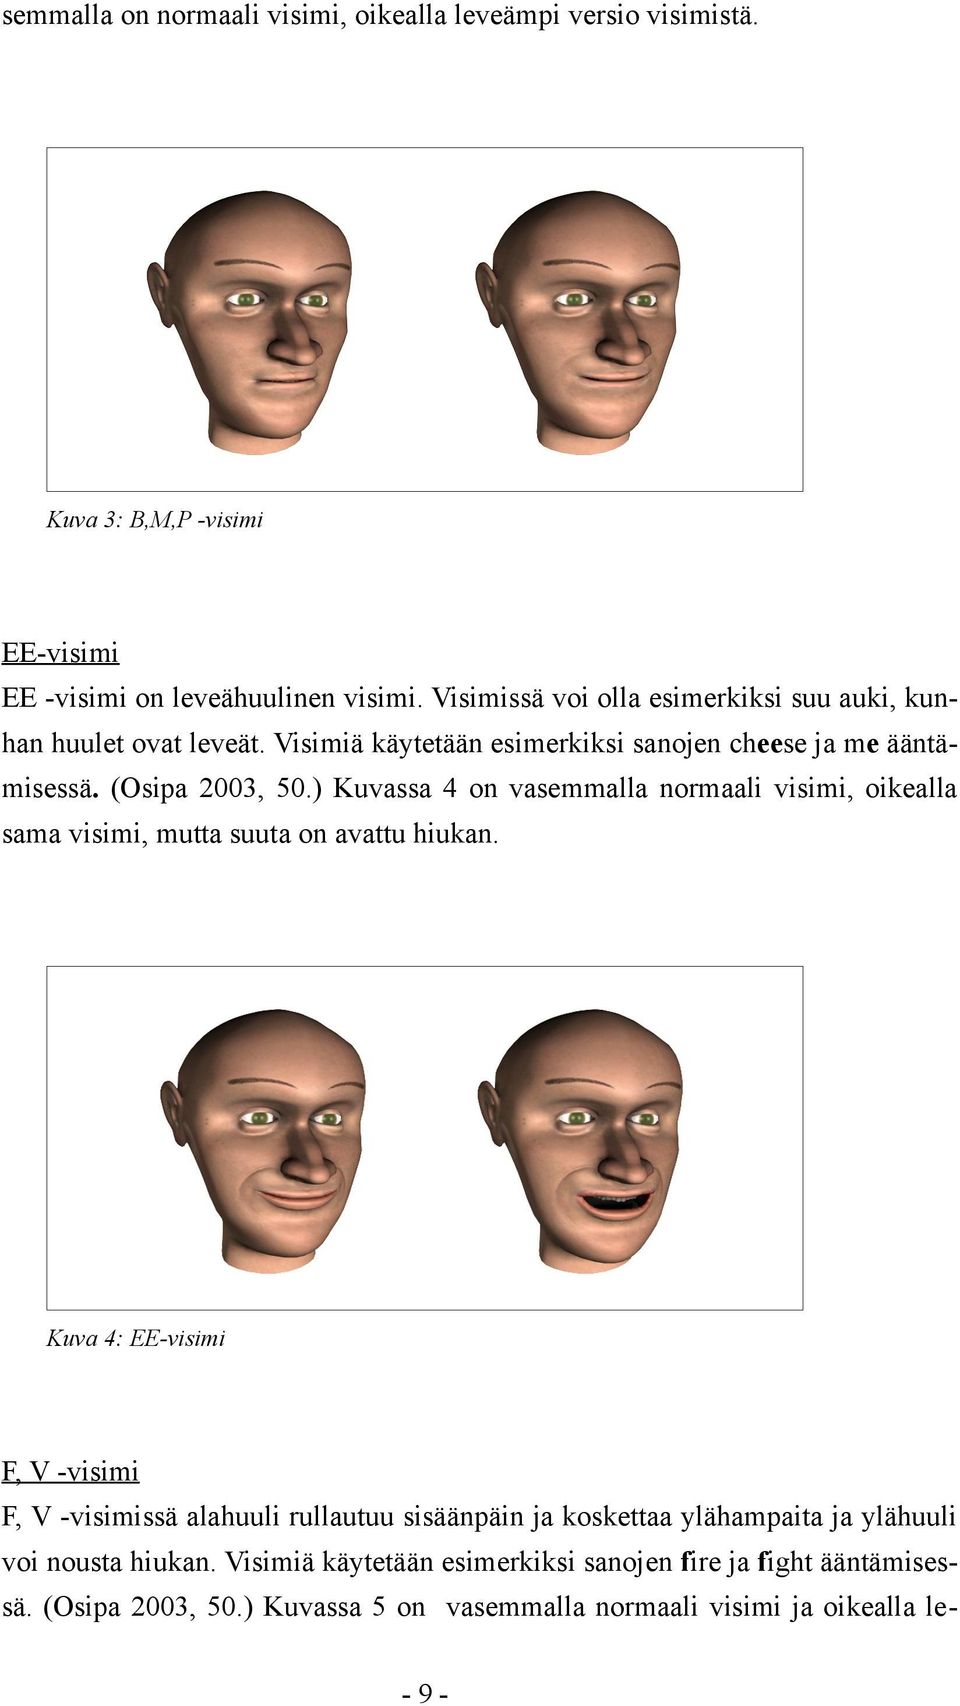 ) Kuvassa 4 on vasemmalla normaali visimi, oikealla sama visimi, mutta suuta on avattu hiukan.